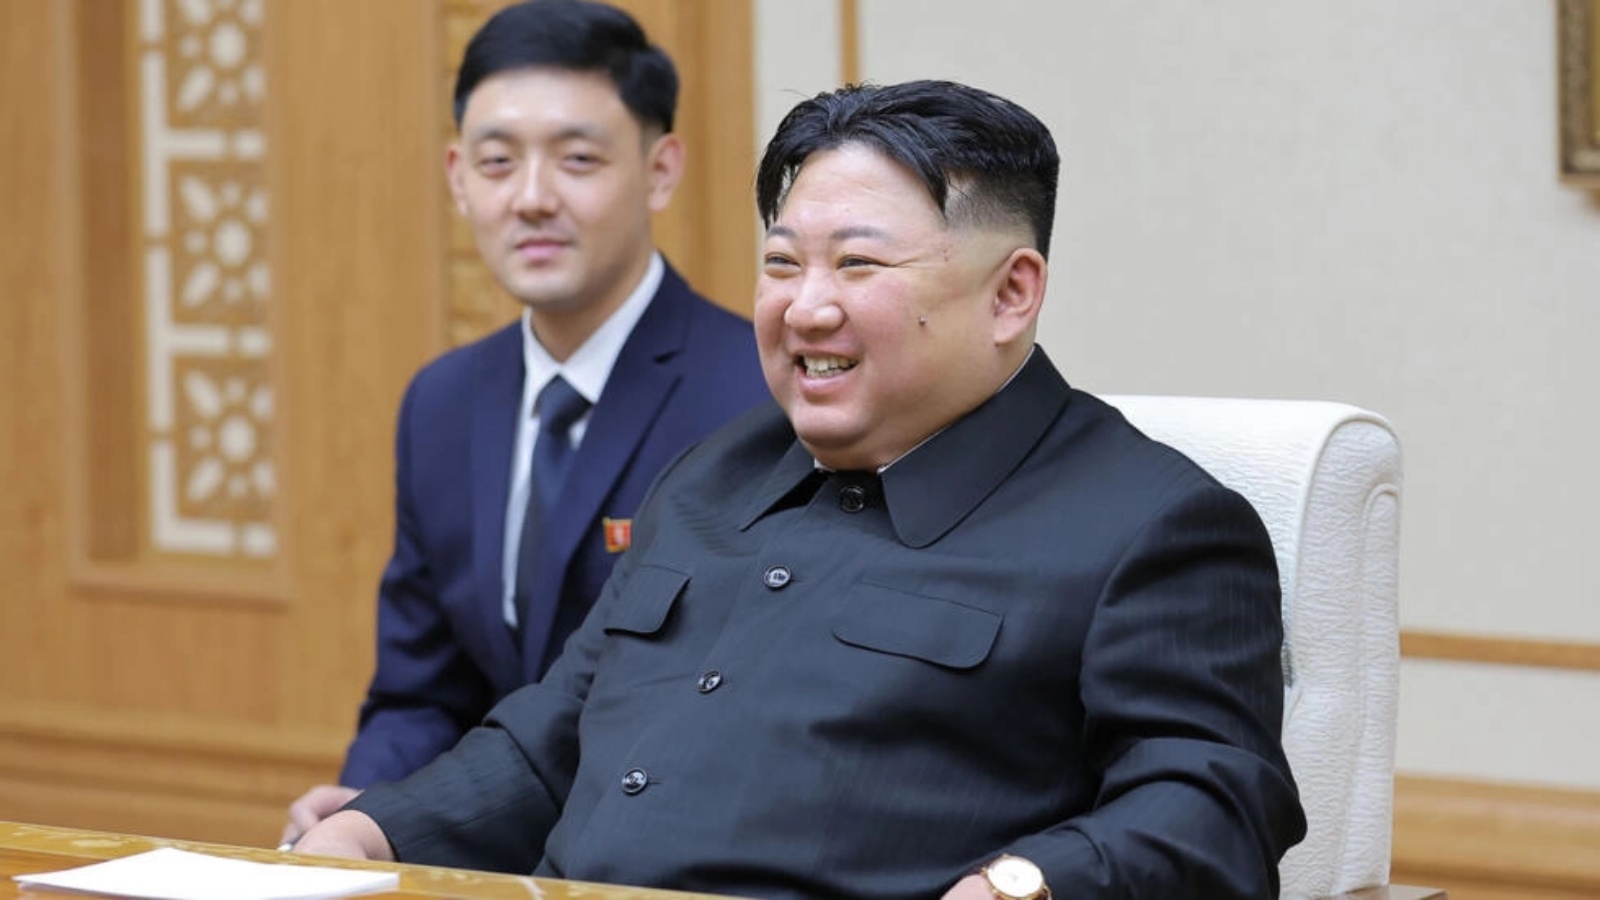 صورة التقطت في 19 أكتوبر 2023 نشرتها وكالة الأنباء المركزية الكورية الرسمية في 20 تشرين الأول/أكتوبر تظهر الزعيم الكوري الشمالي كيم جونغ أون خلال اجتماعه مع وزير الخارجية الروسي سيرغي لافروف في بيونغ يانغ